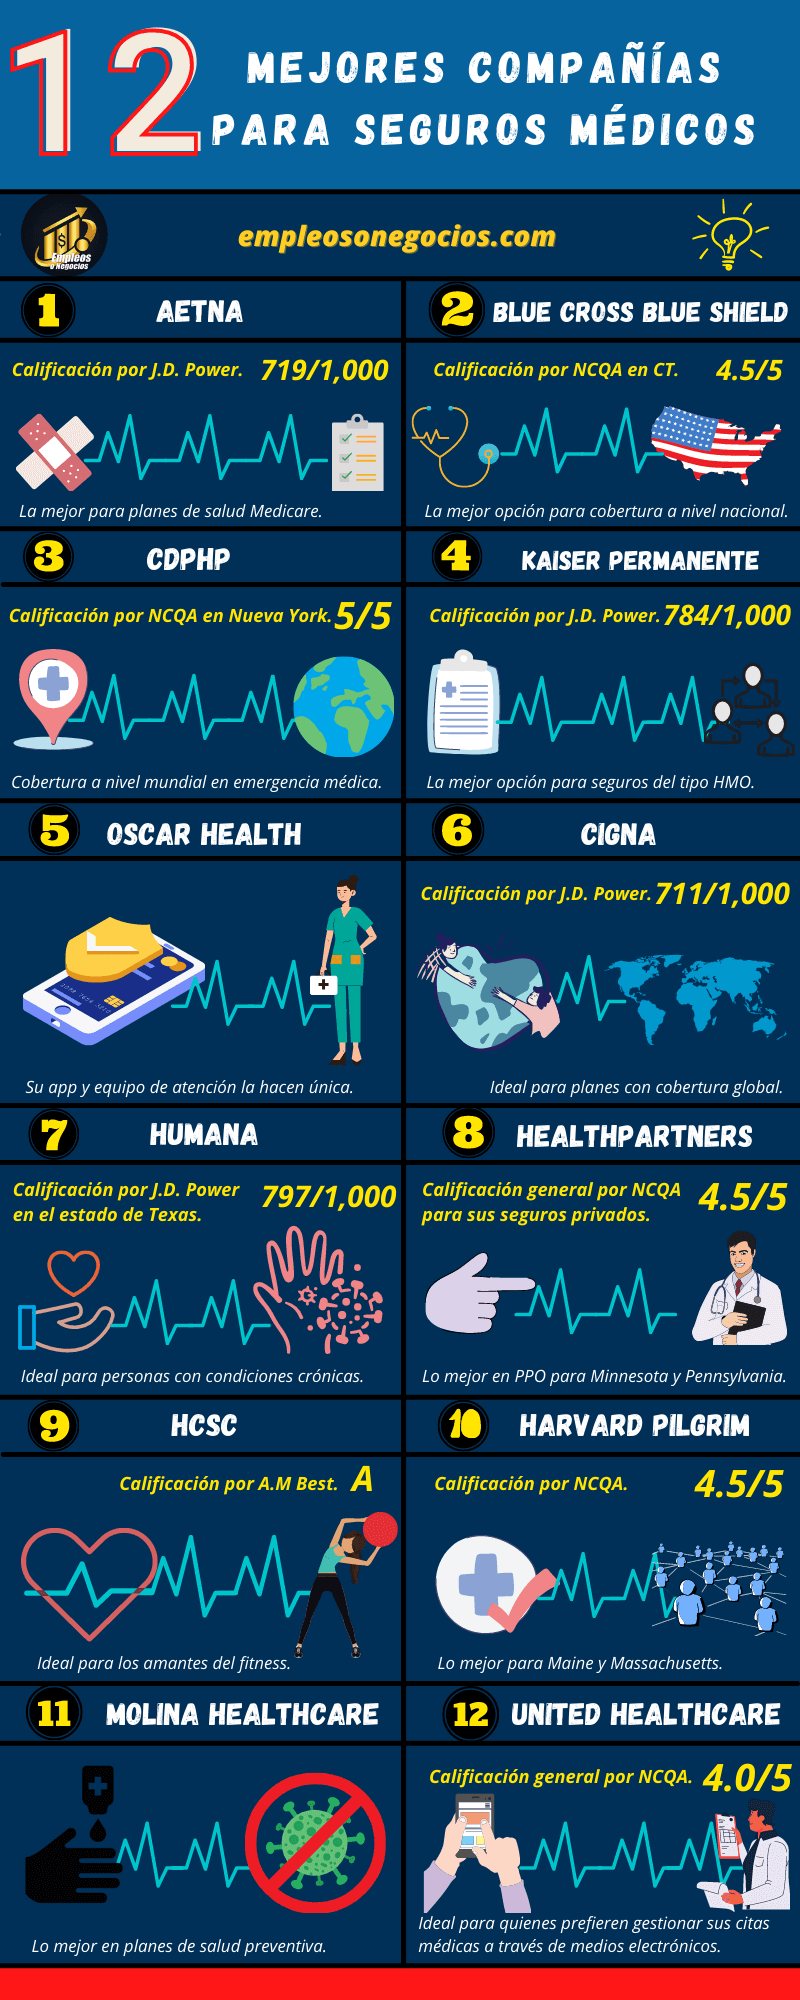 Infografía sobre empresas con los mejores seguros médicos en Estados Unidos